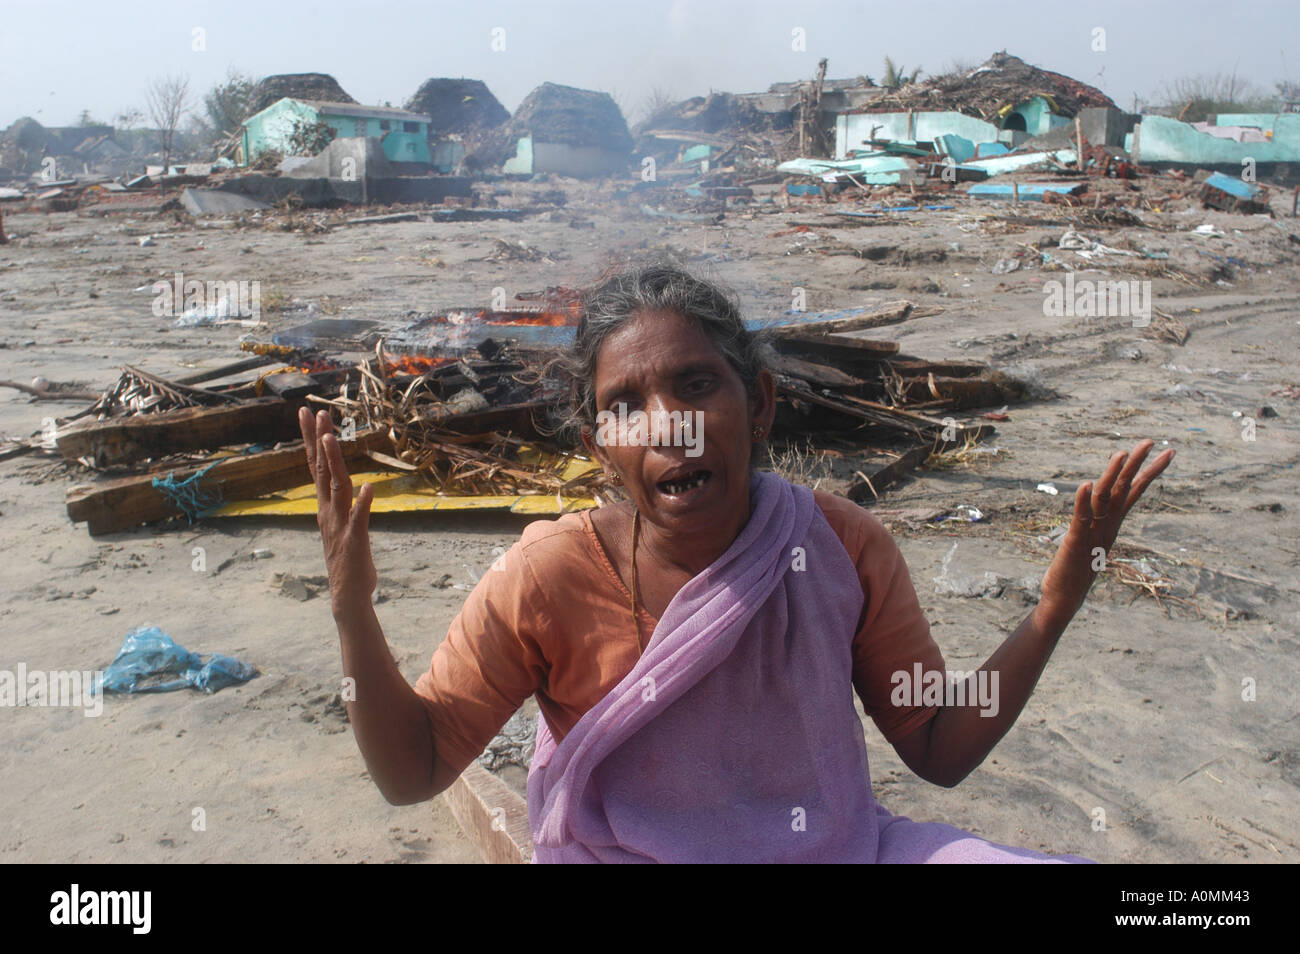 Tod von Womens Sohn durch Naturkatastrophe Tsunami Erdbeben am Meeresgrund Nagapattinum Velankanni Tamil Nadu indischen Ozean Indien Stockfoto